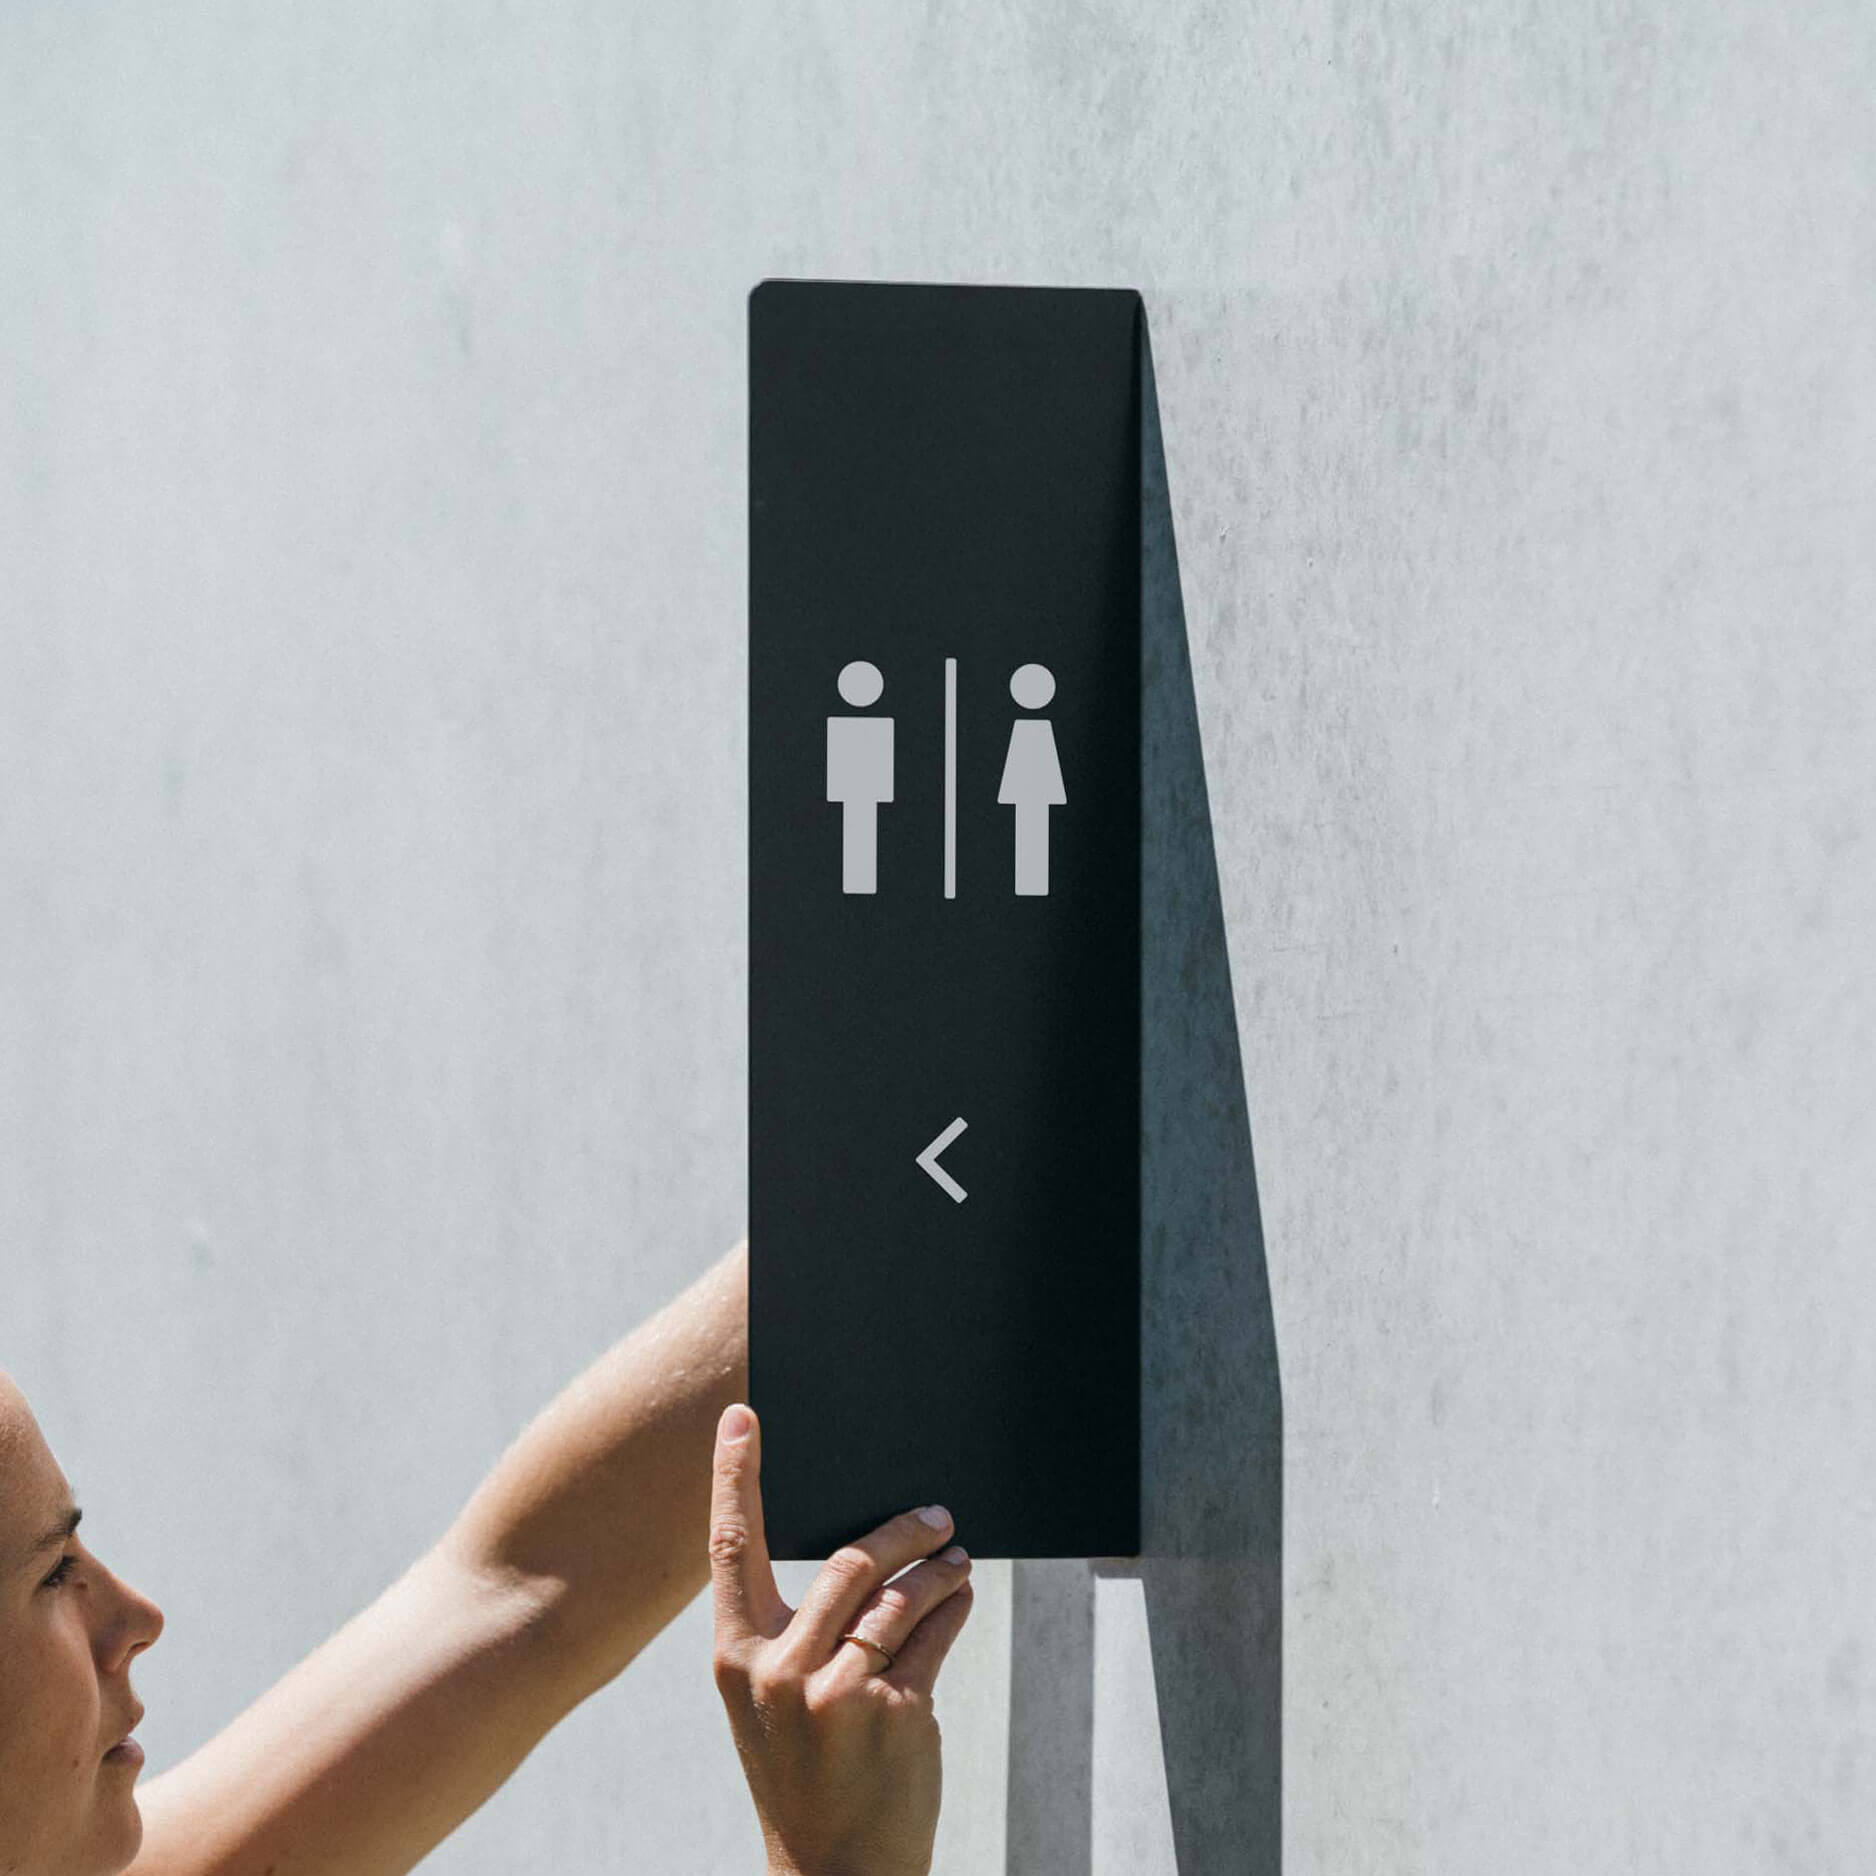 Men's Restroom Sign, 4-ft Steel Sign Stand | Plum Grove